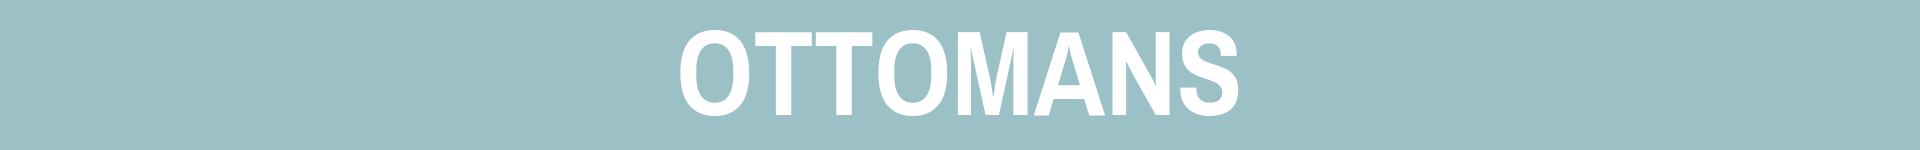 ottomons